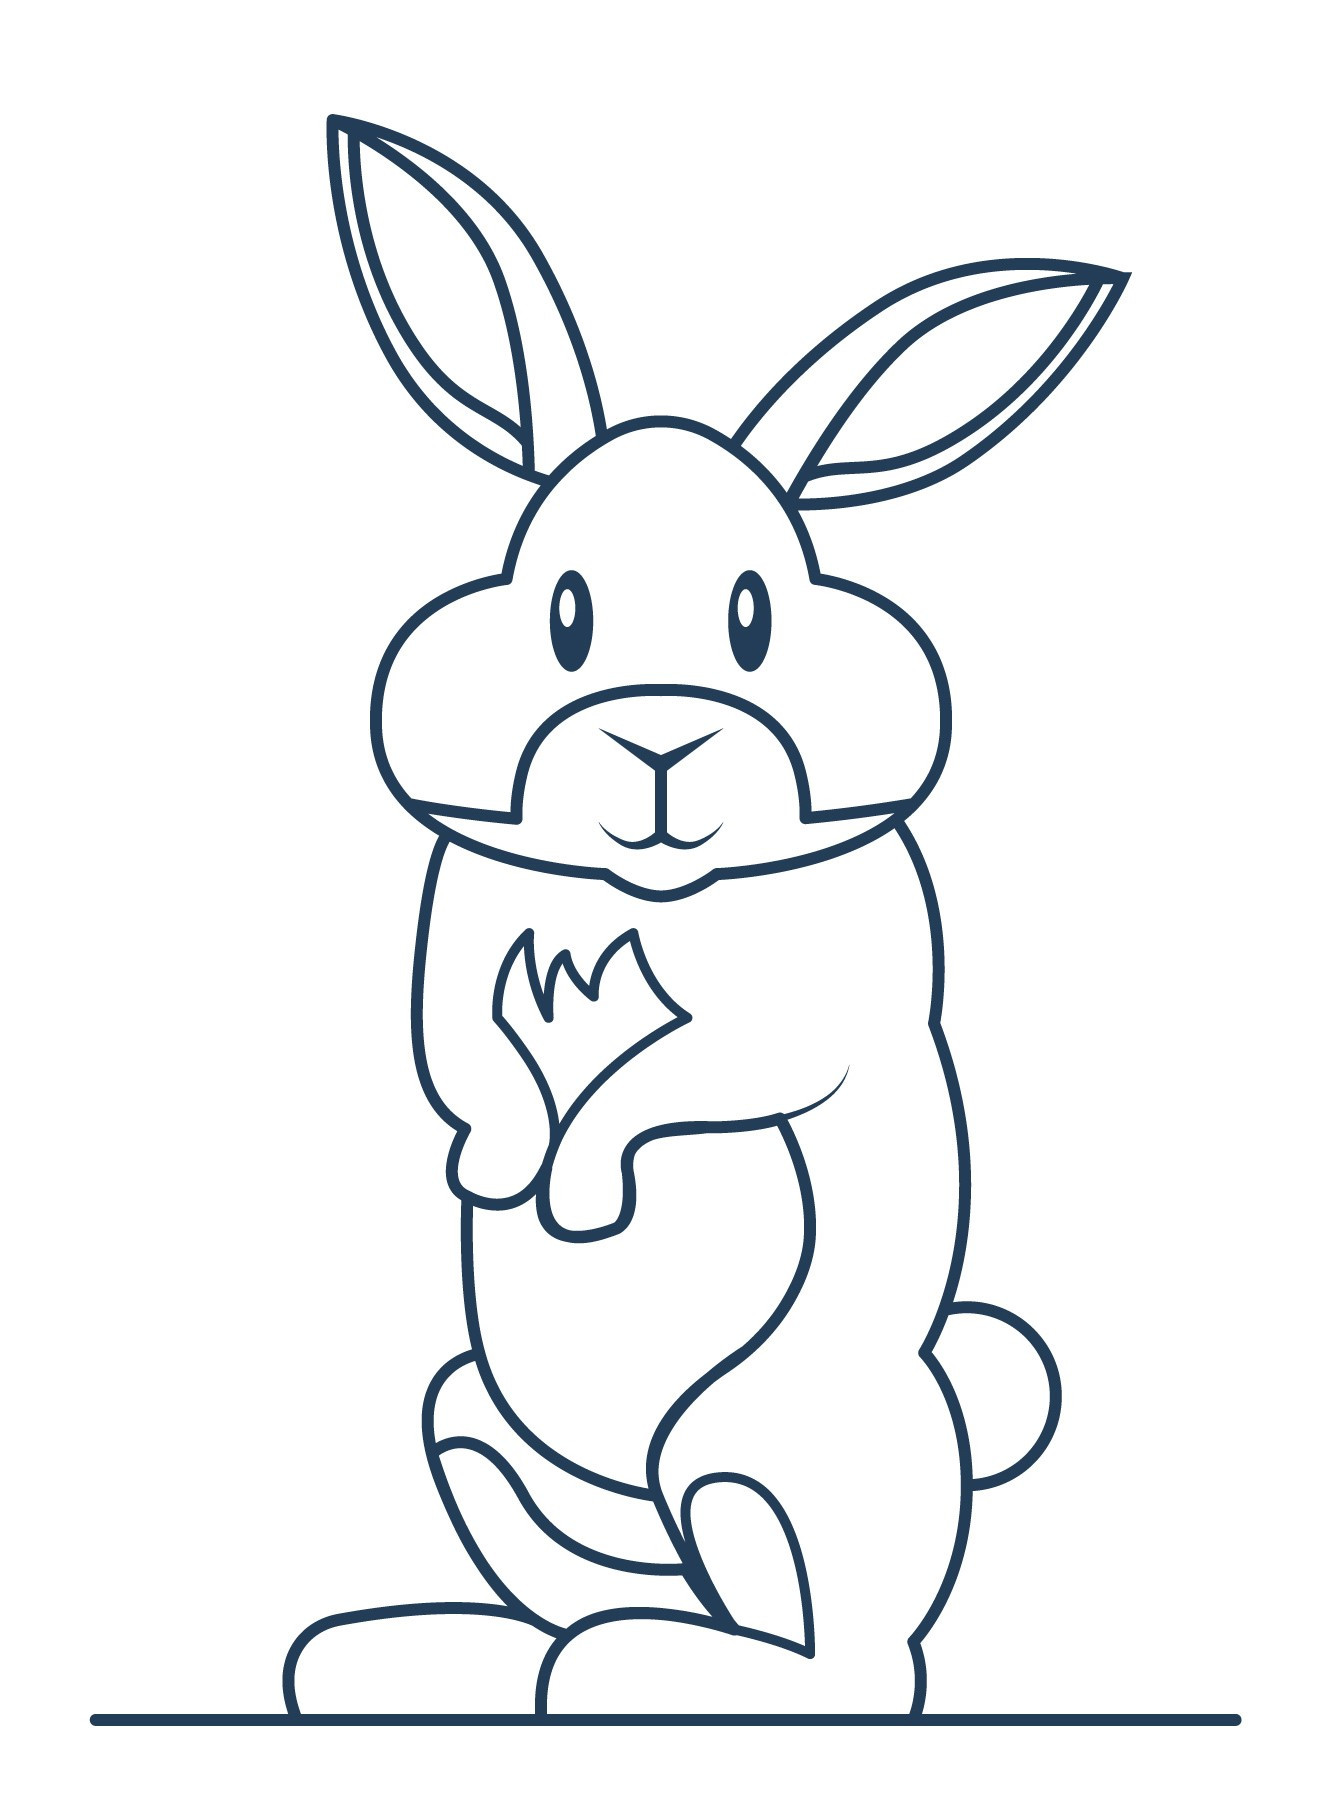 Раскраска для детей: заяц русак на задних лапах